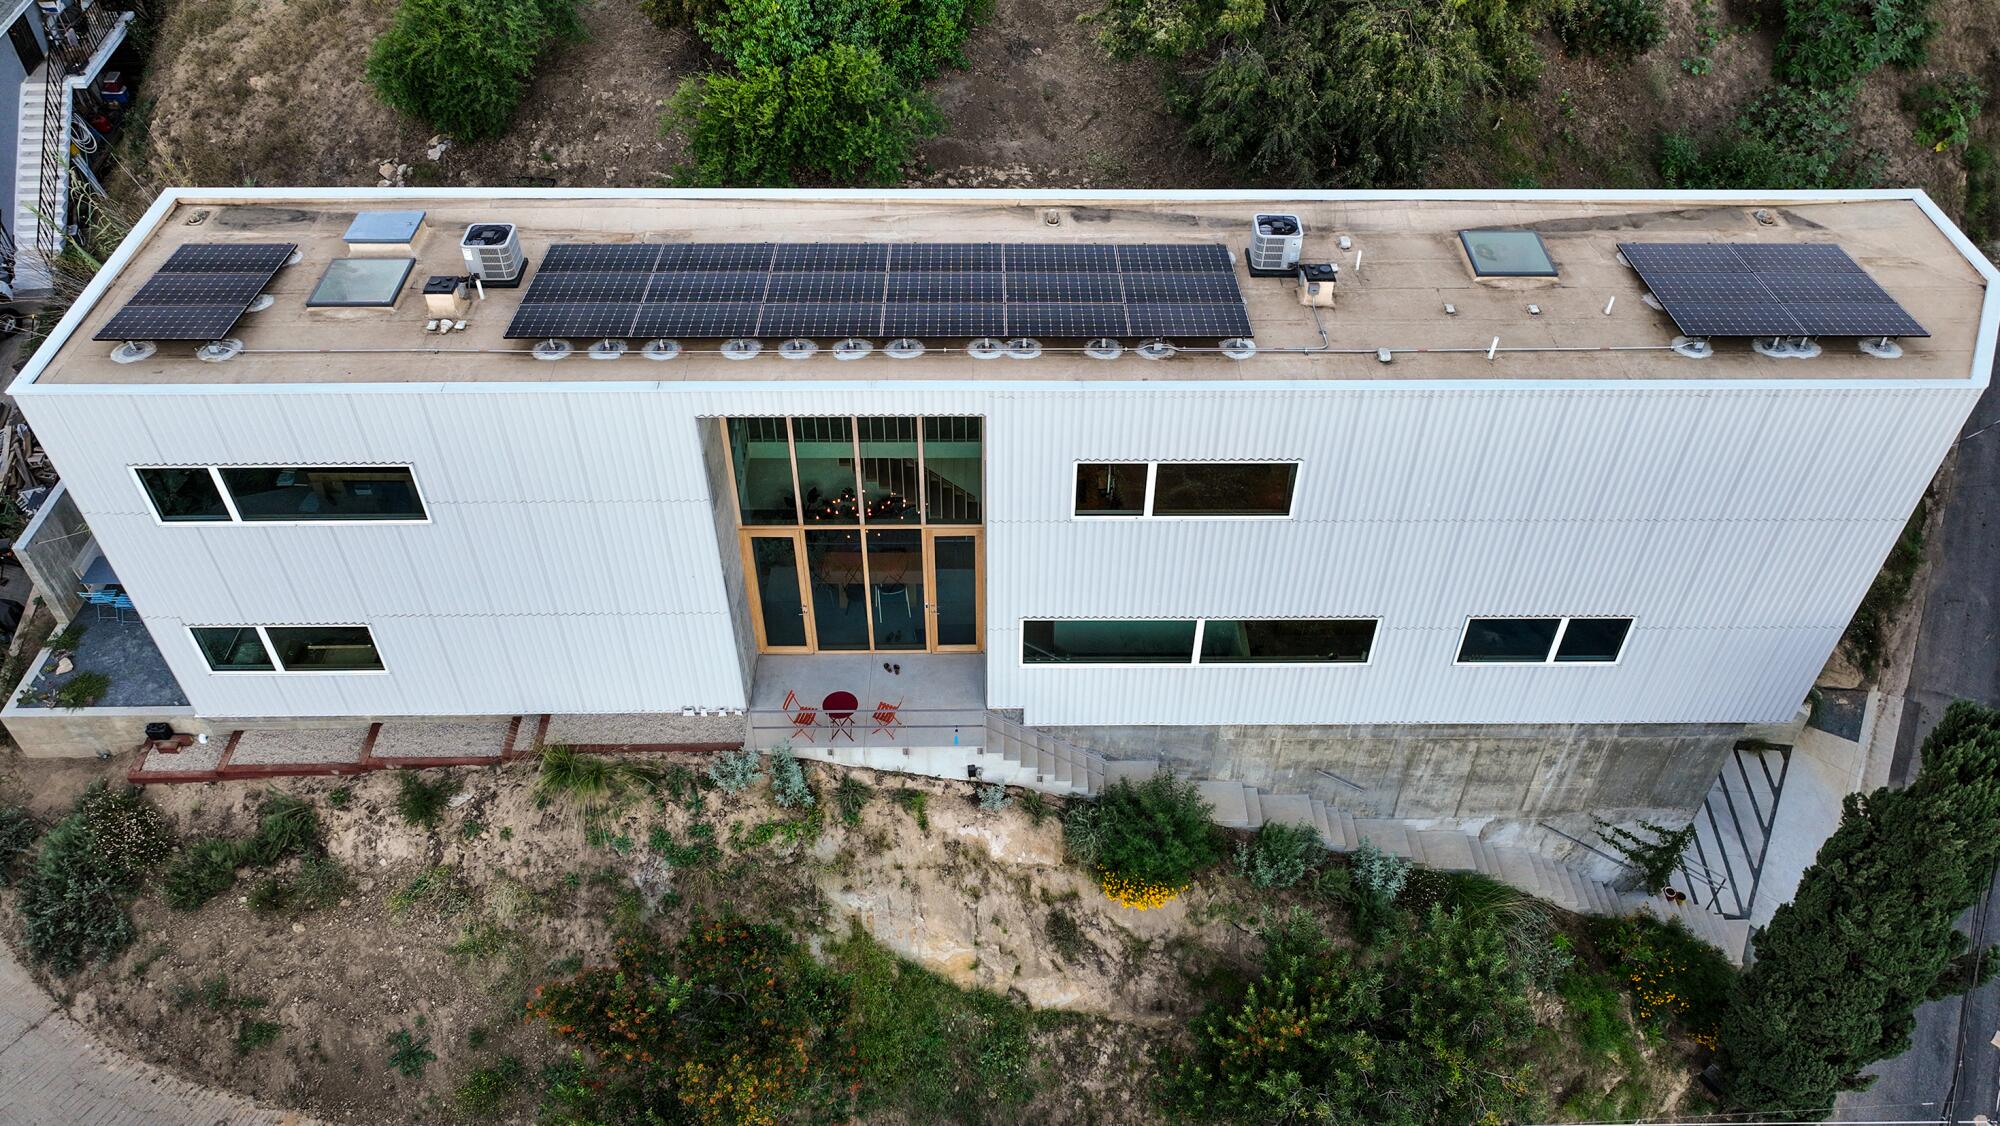 D’en haut, vous voyez la maison haute, mince et longue avec de grandes fenêtres verticales et des panneaux solaires sur le toit.